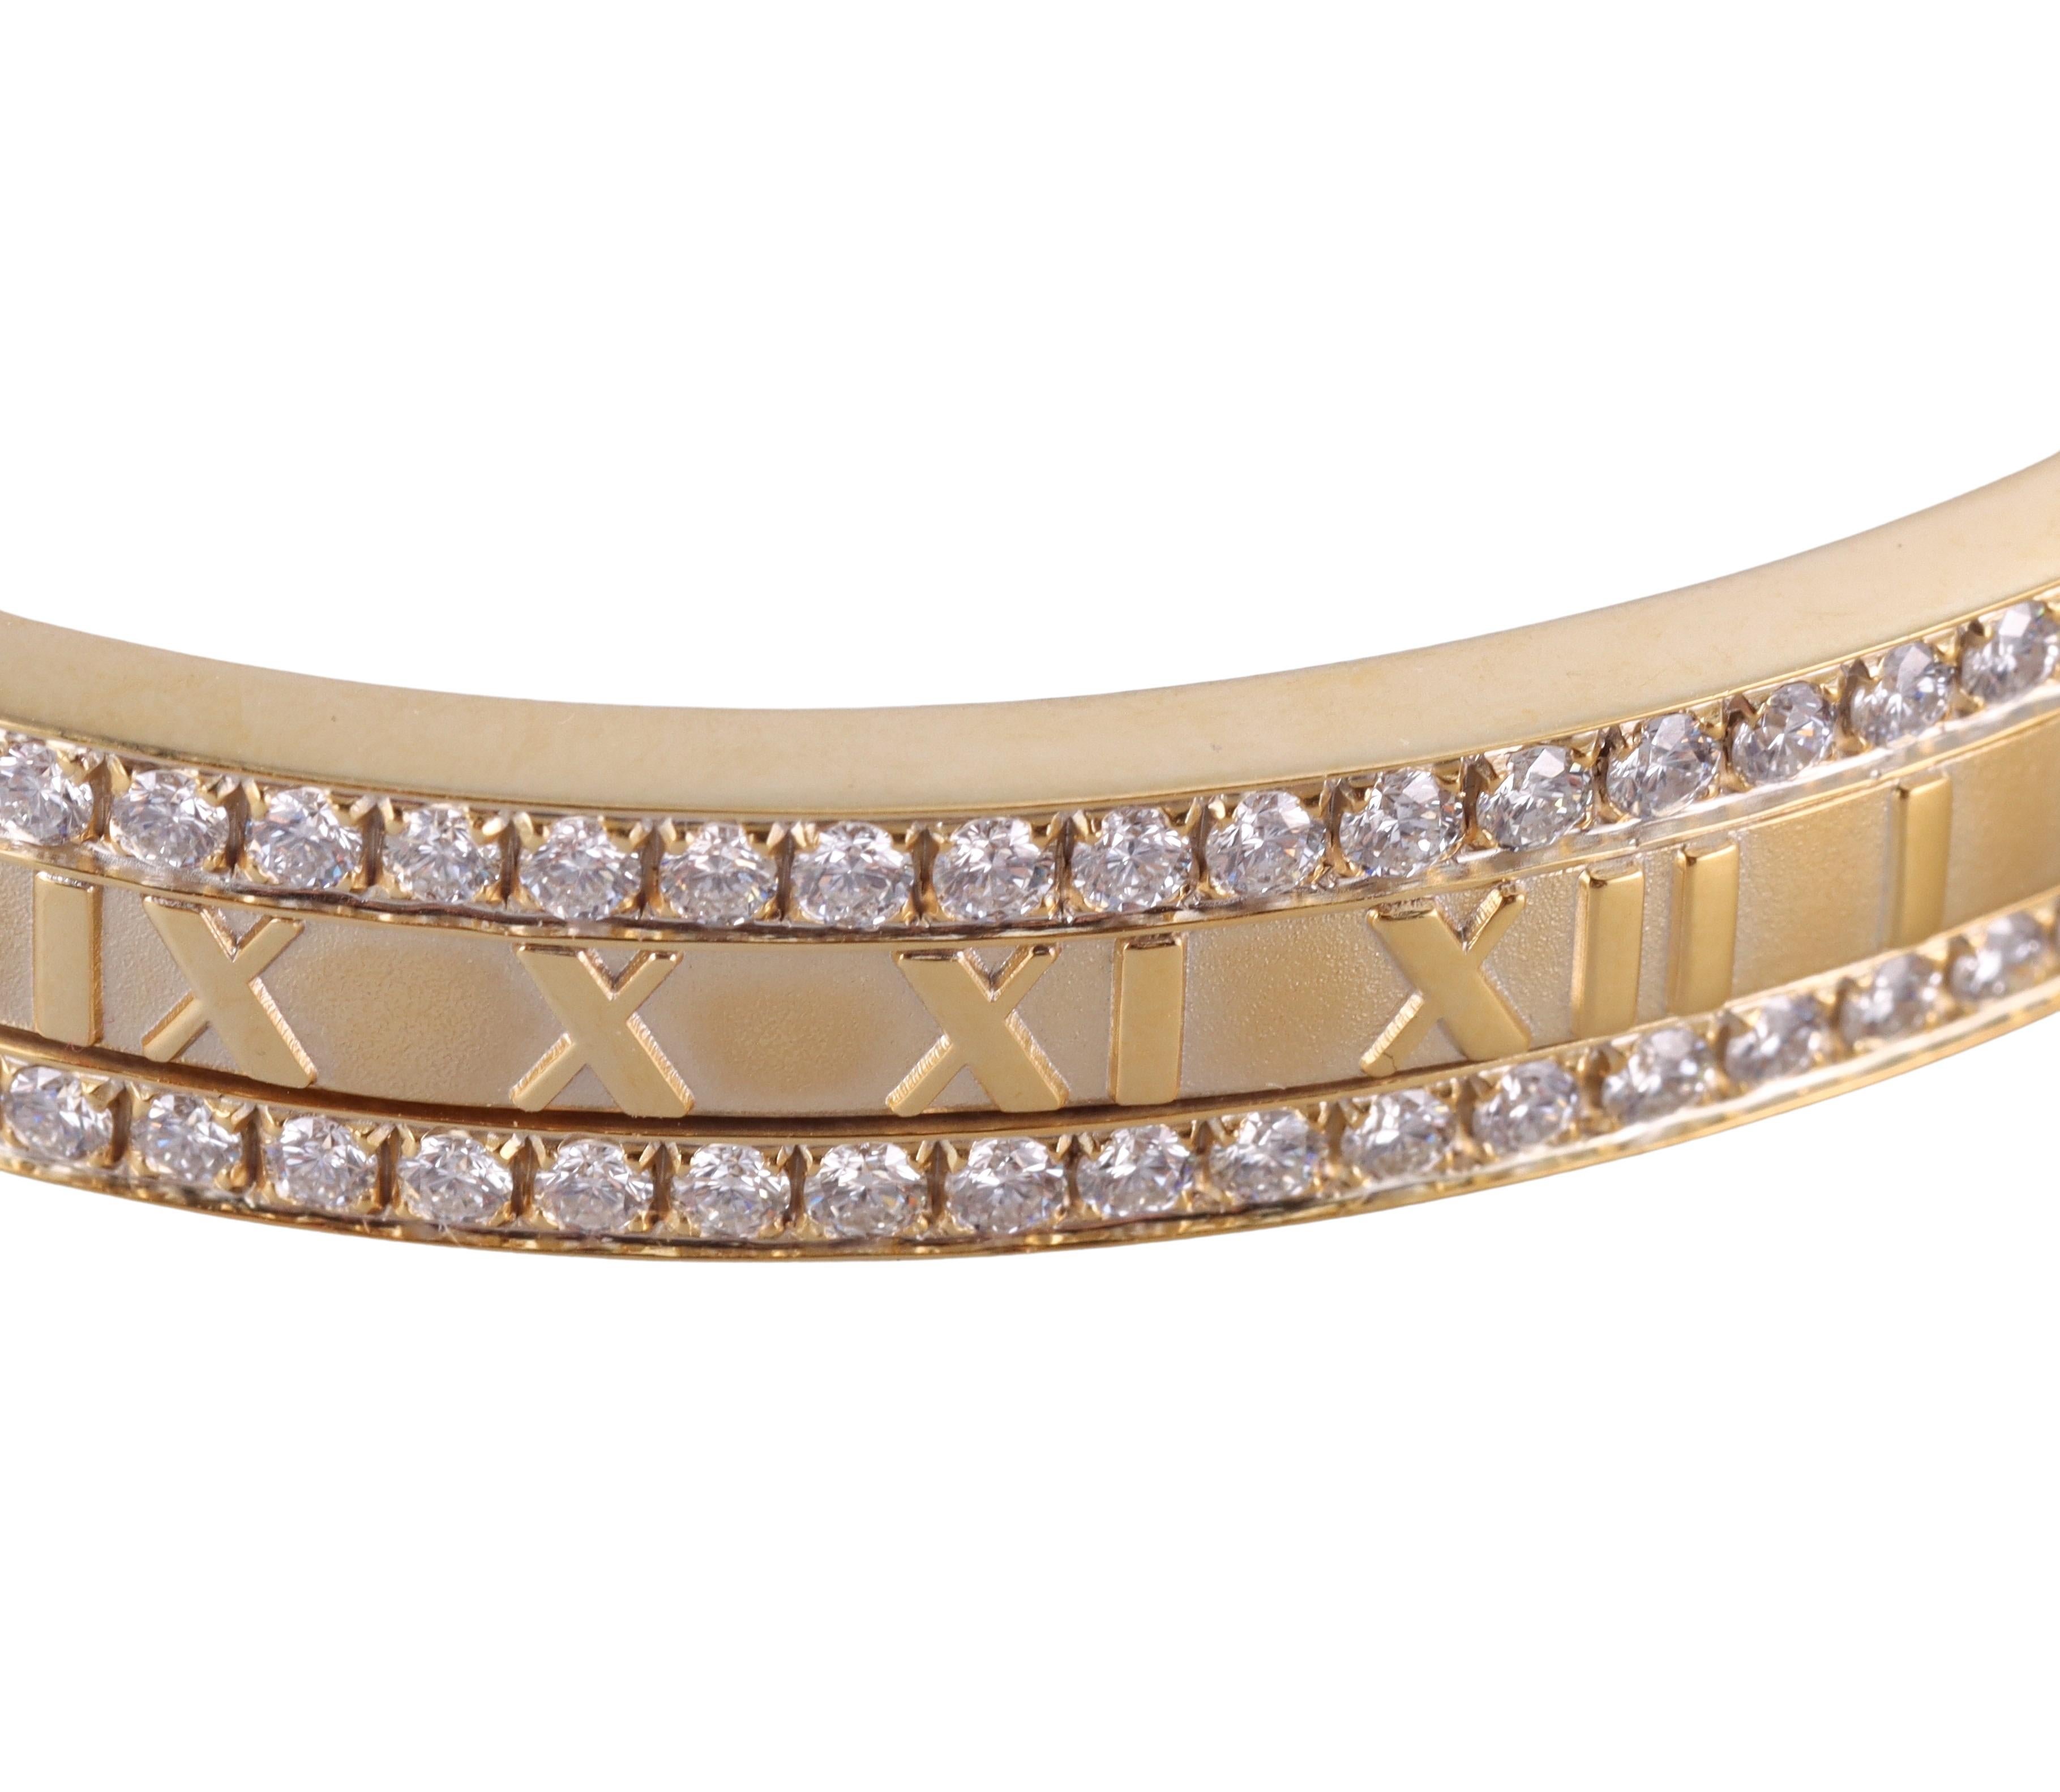 18k Gelbgold Atlas Armreif von Tiffany & Co, besetzt mit ca. 3,50ctw G/VS Diamanten auf einer Seite des Armbands. Passt auf ein Handgelenk von ca. 7